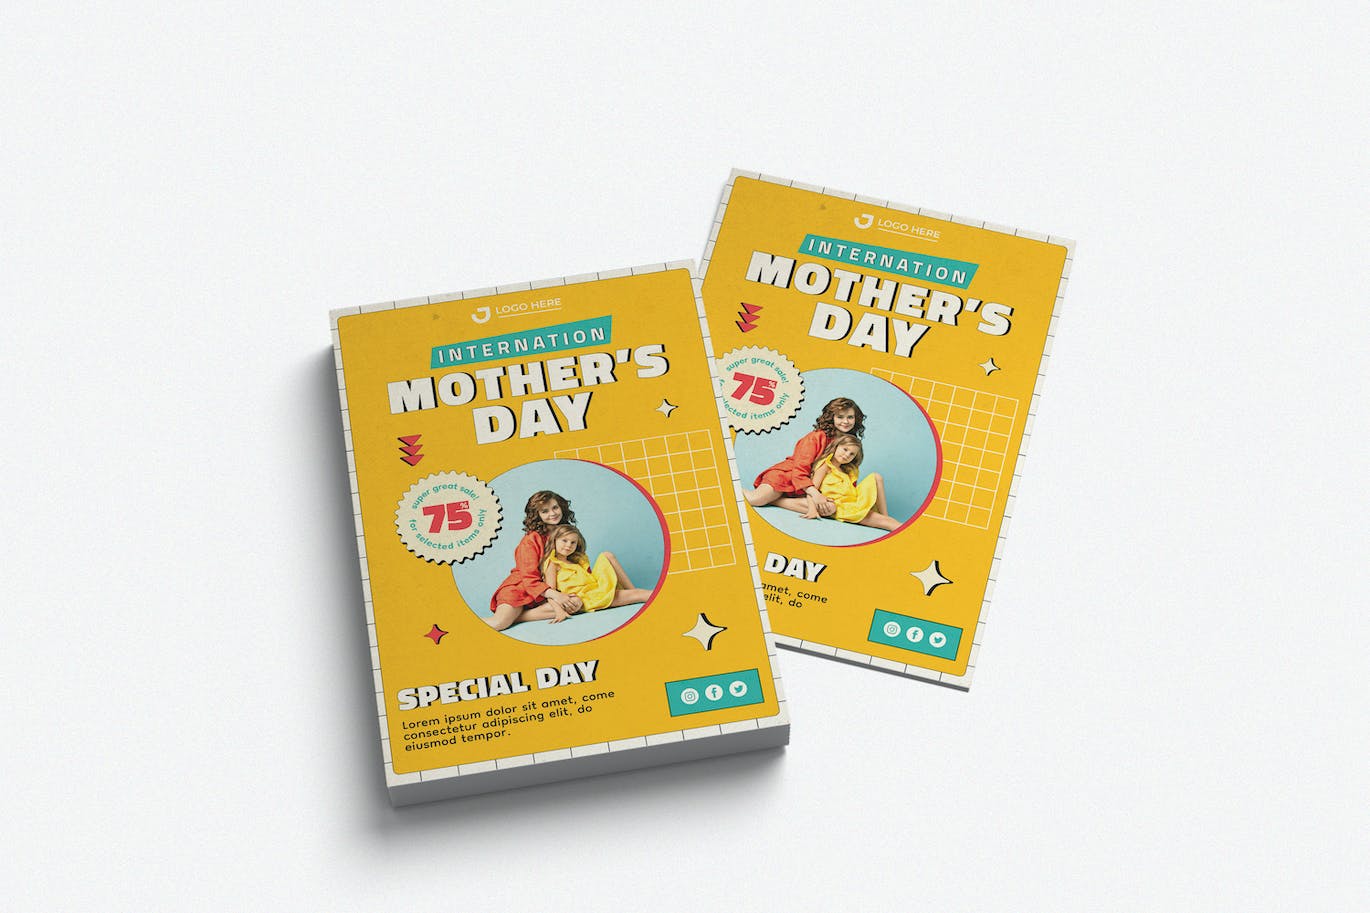 母亲节快乐节日宣传单模板下载 Happy Mother’s Day Template 设计素材 第1张